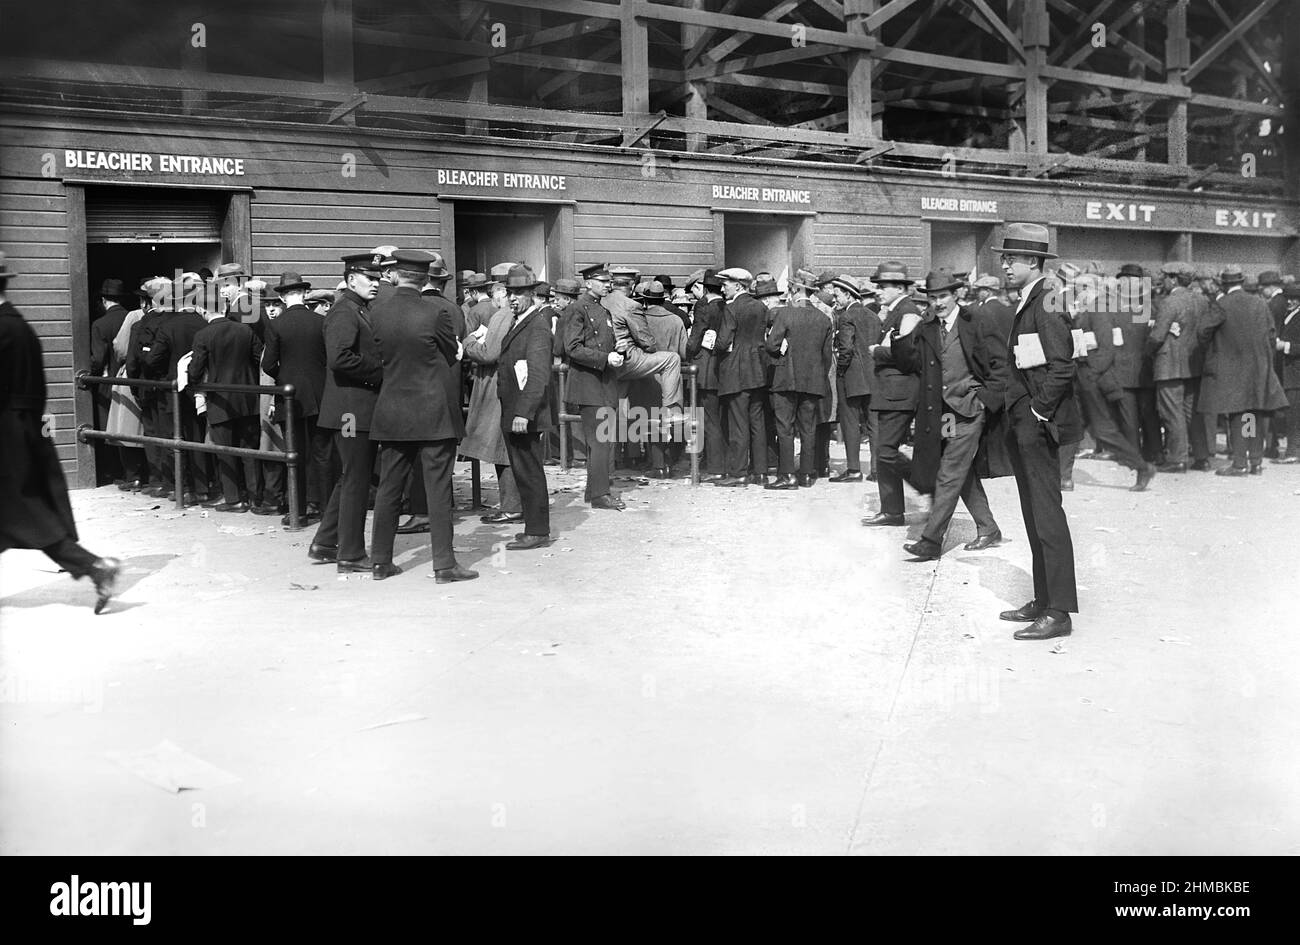 Les fans se sont mis en file d'affaires pour les places de Bleacher au World Series Game 1, Yankee Stadium, Bronx, New York, États-Unis, Bain News Service, octobre 1923 Banque D'Images